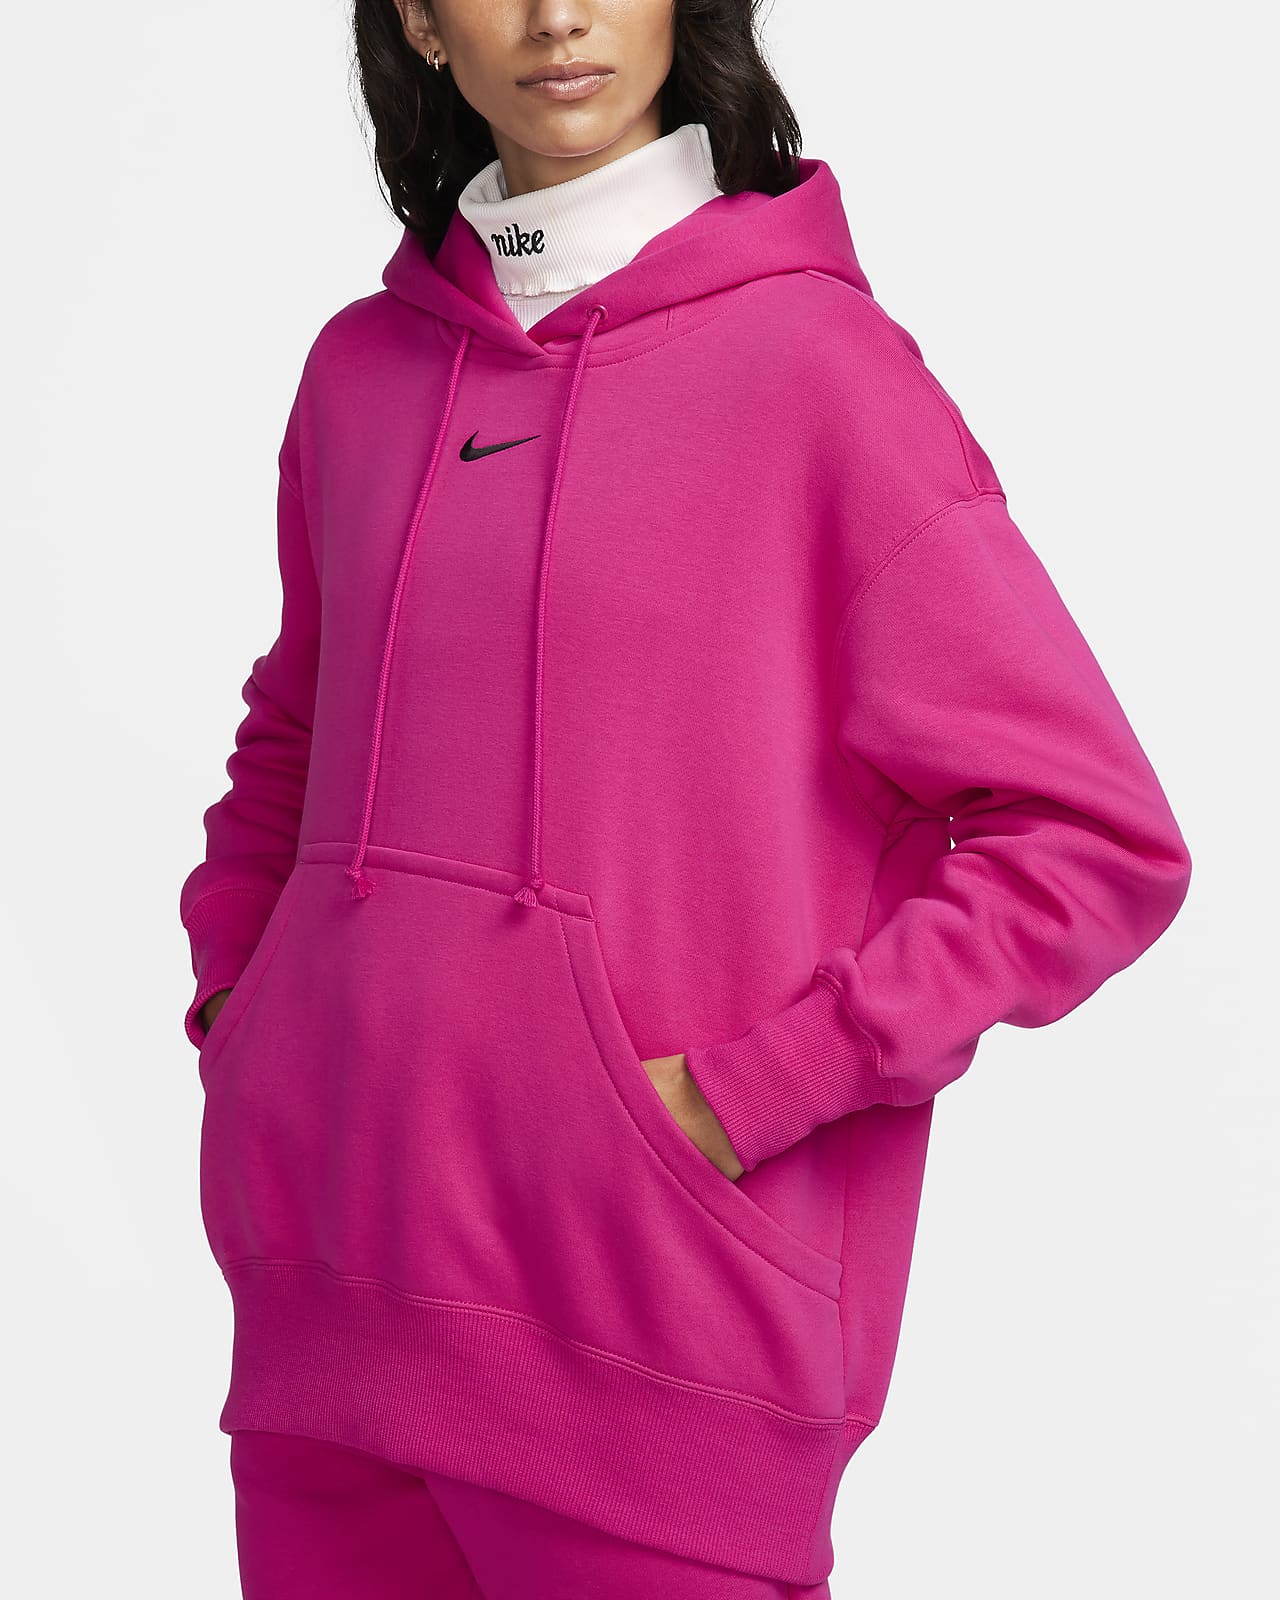 Nike Sportswear Phoenix Women's Pullover Hoodie. Nike